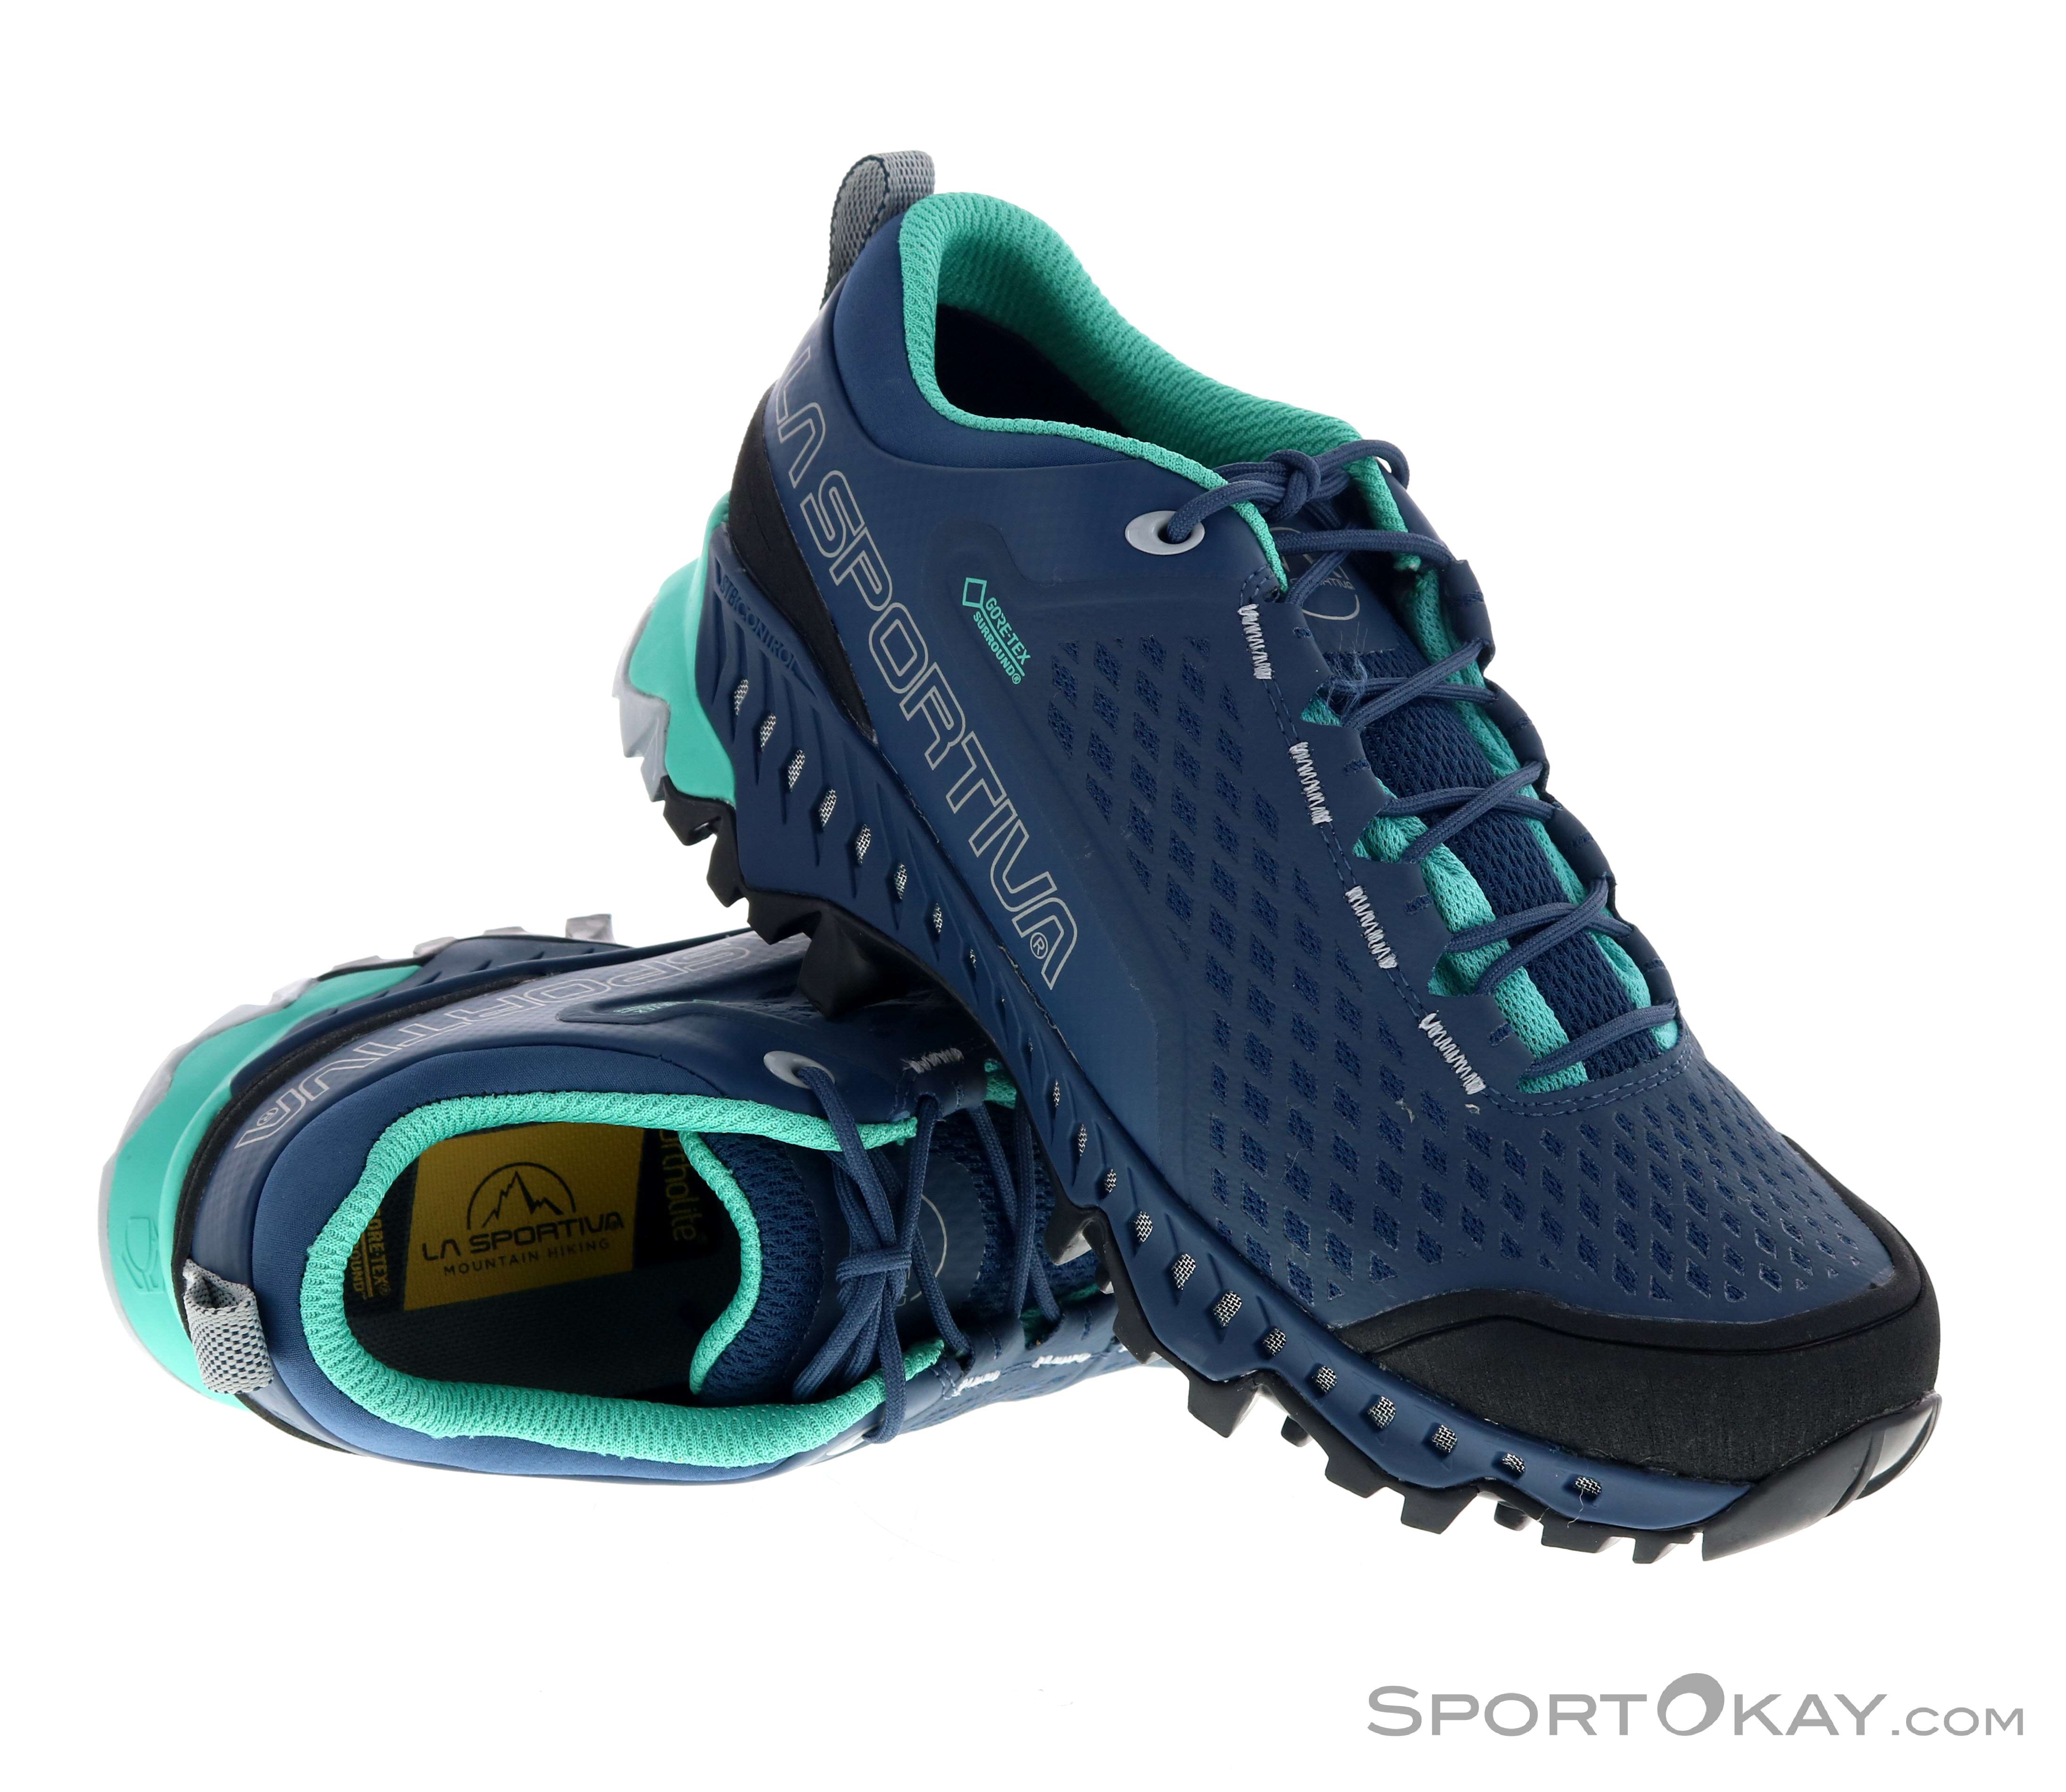 la sportiva women's hiking footwear